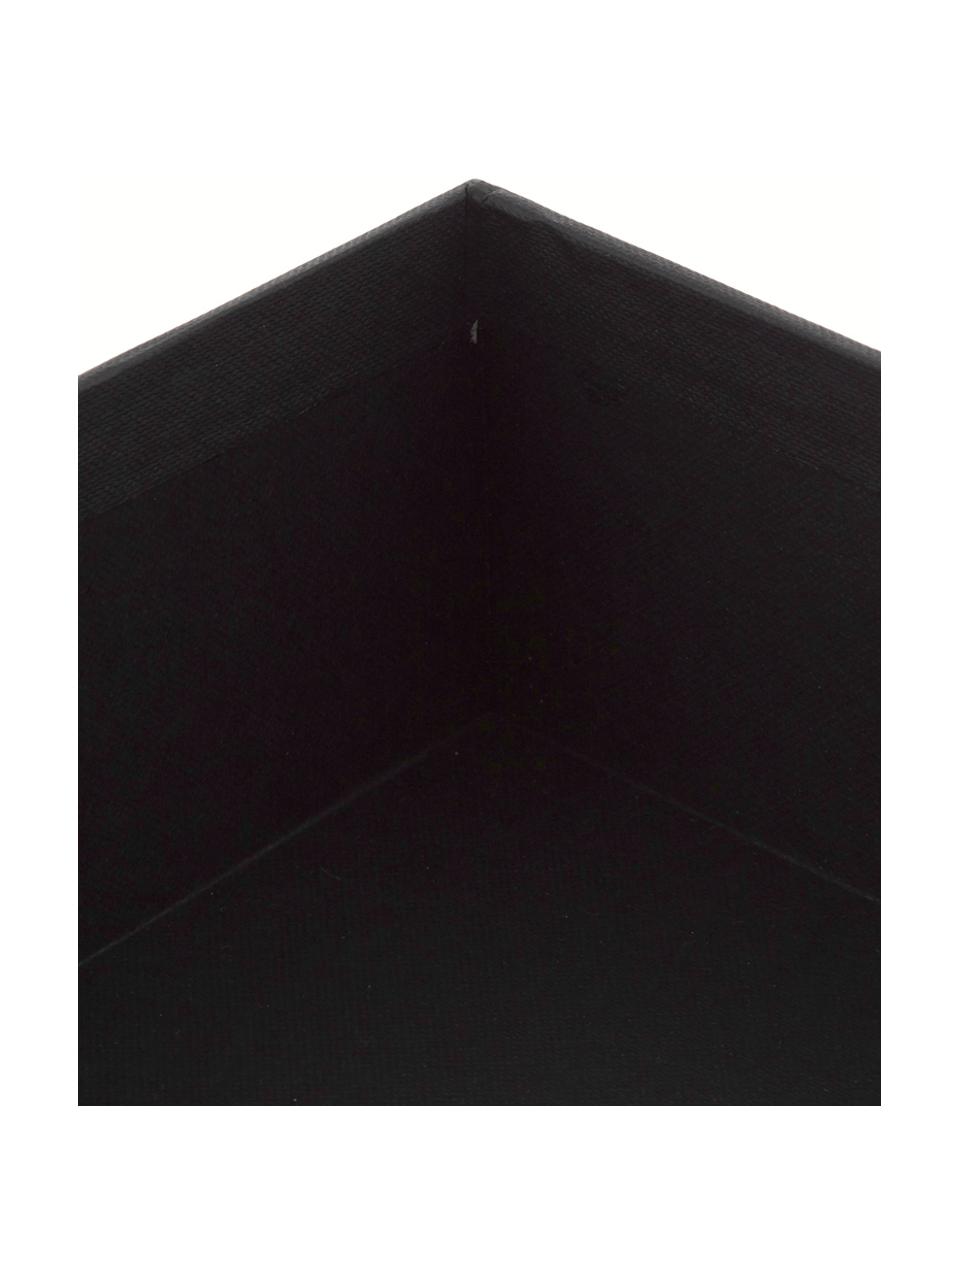 Documentenhouder Trey, Stevig, gelamineerd karton, Zwart, B 23 x H 21 cm